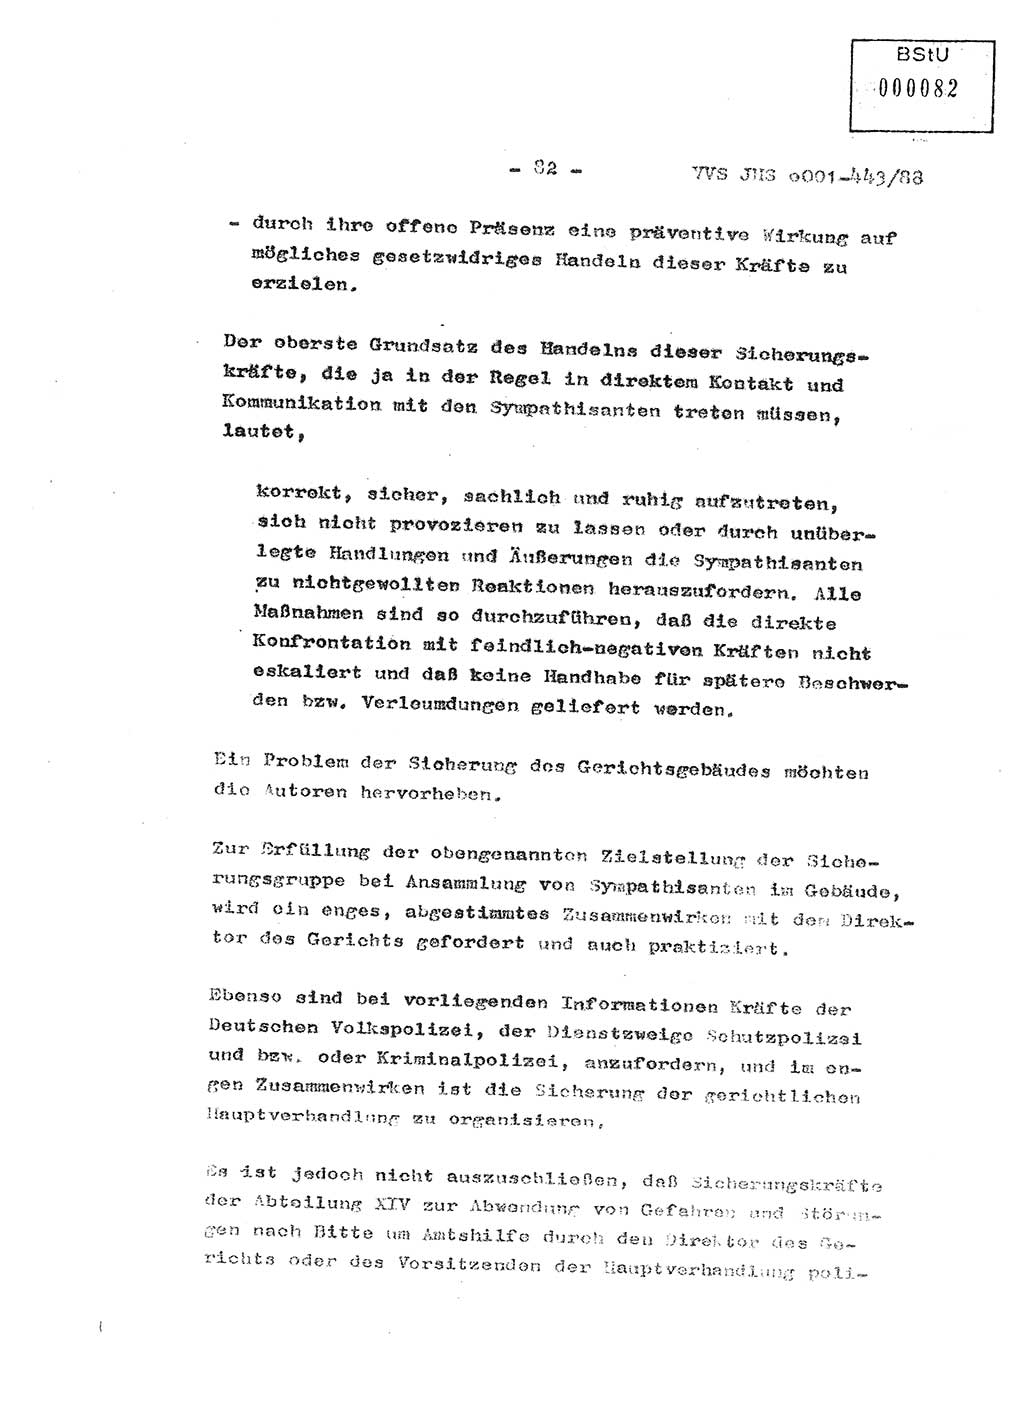 Diplomarbeit Hauptmann Michael Rast (Abt. ⅩⅣ), Major Bernd Rahaus (Abt. ⅩⅣ), Ministerium für Staatssicherheit (MfS) [Deutsche Demokratische Republik (DDR)], Juristische Hochschule (JHS), Vertrauliche Verschlußsache (VVS) o001-443/88, Potsdam 1988, Seite 83 (Dipl.-Arb. MfS DDR JHS VVS o001-443/88 1988, S. 83)